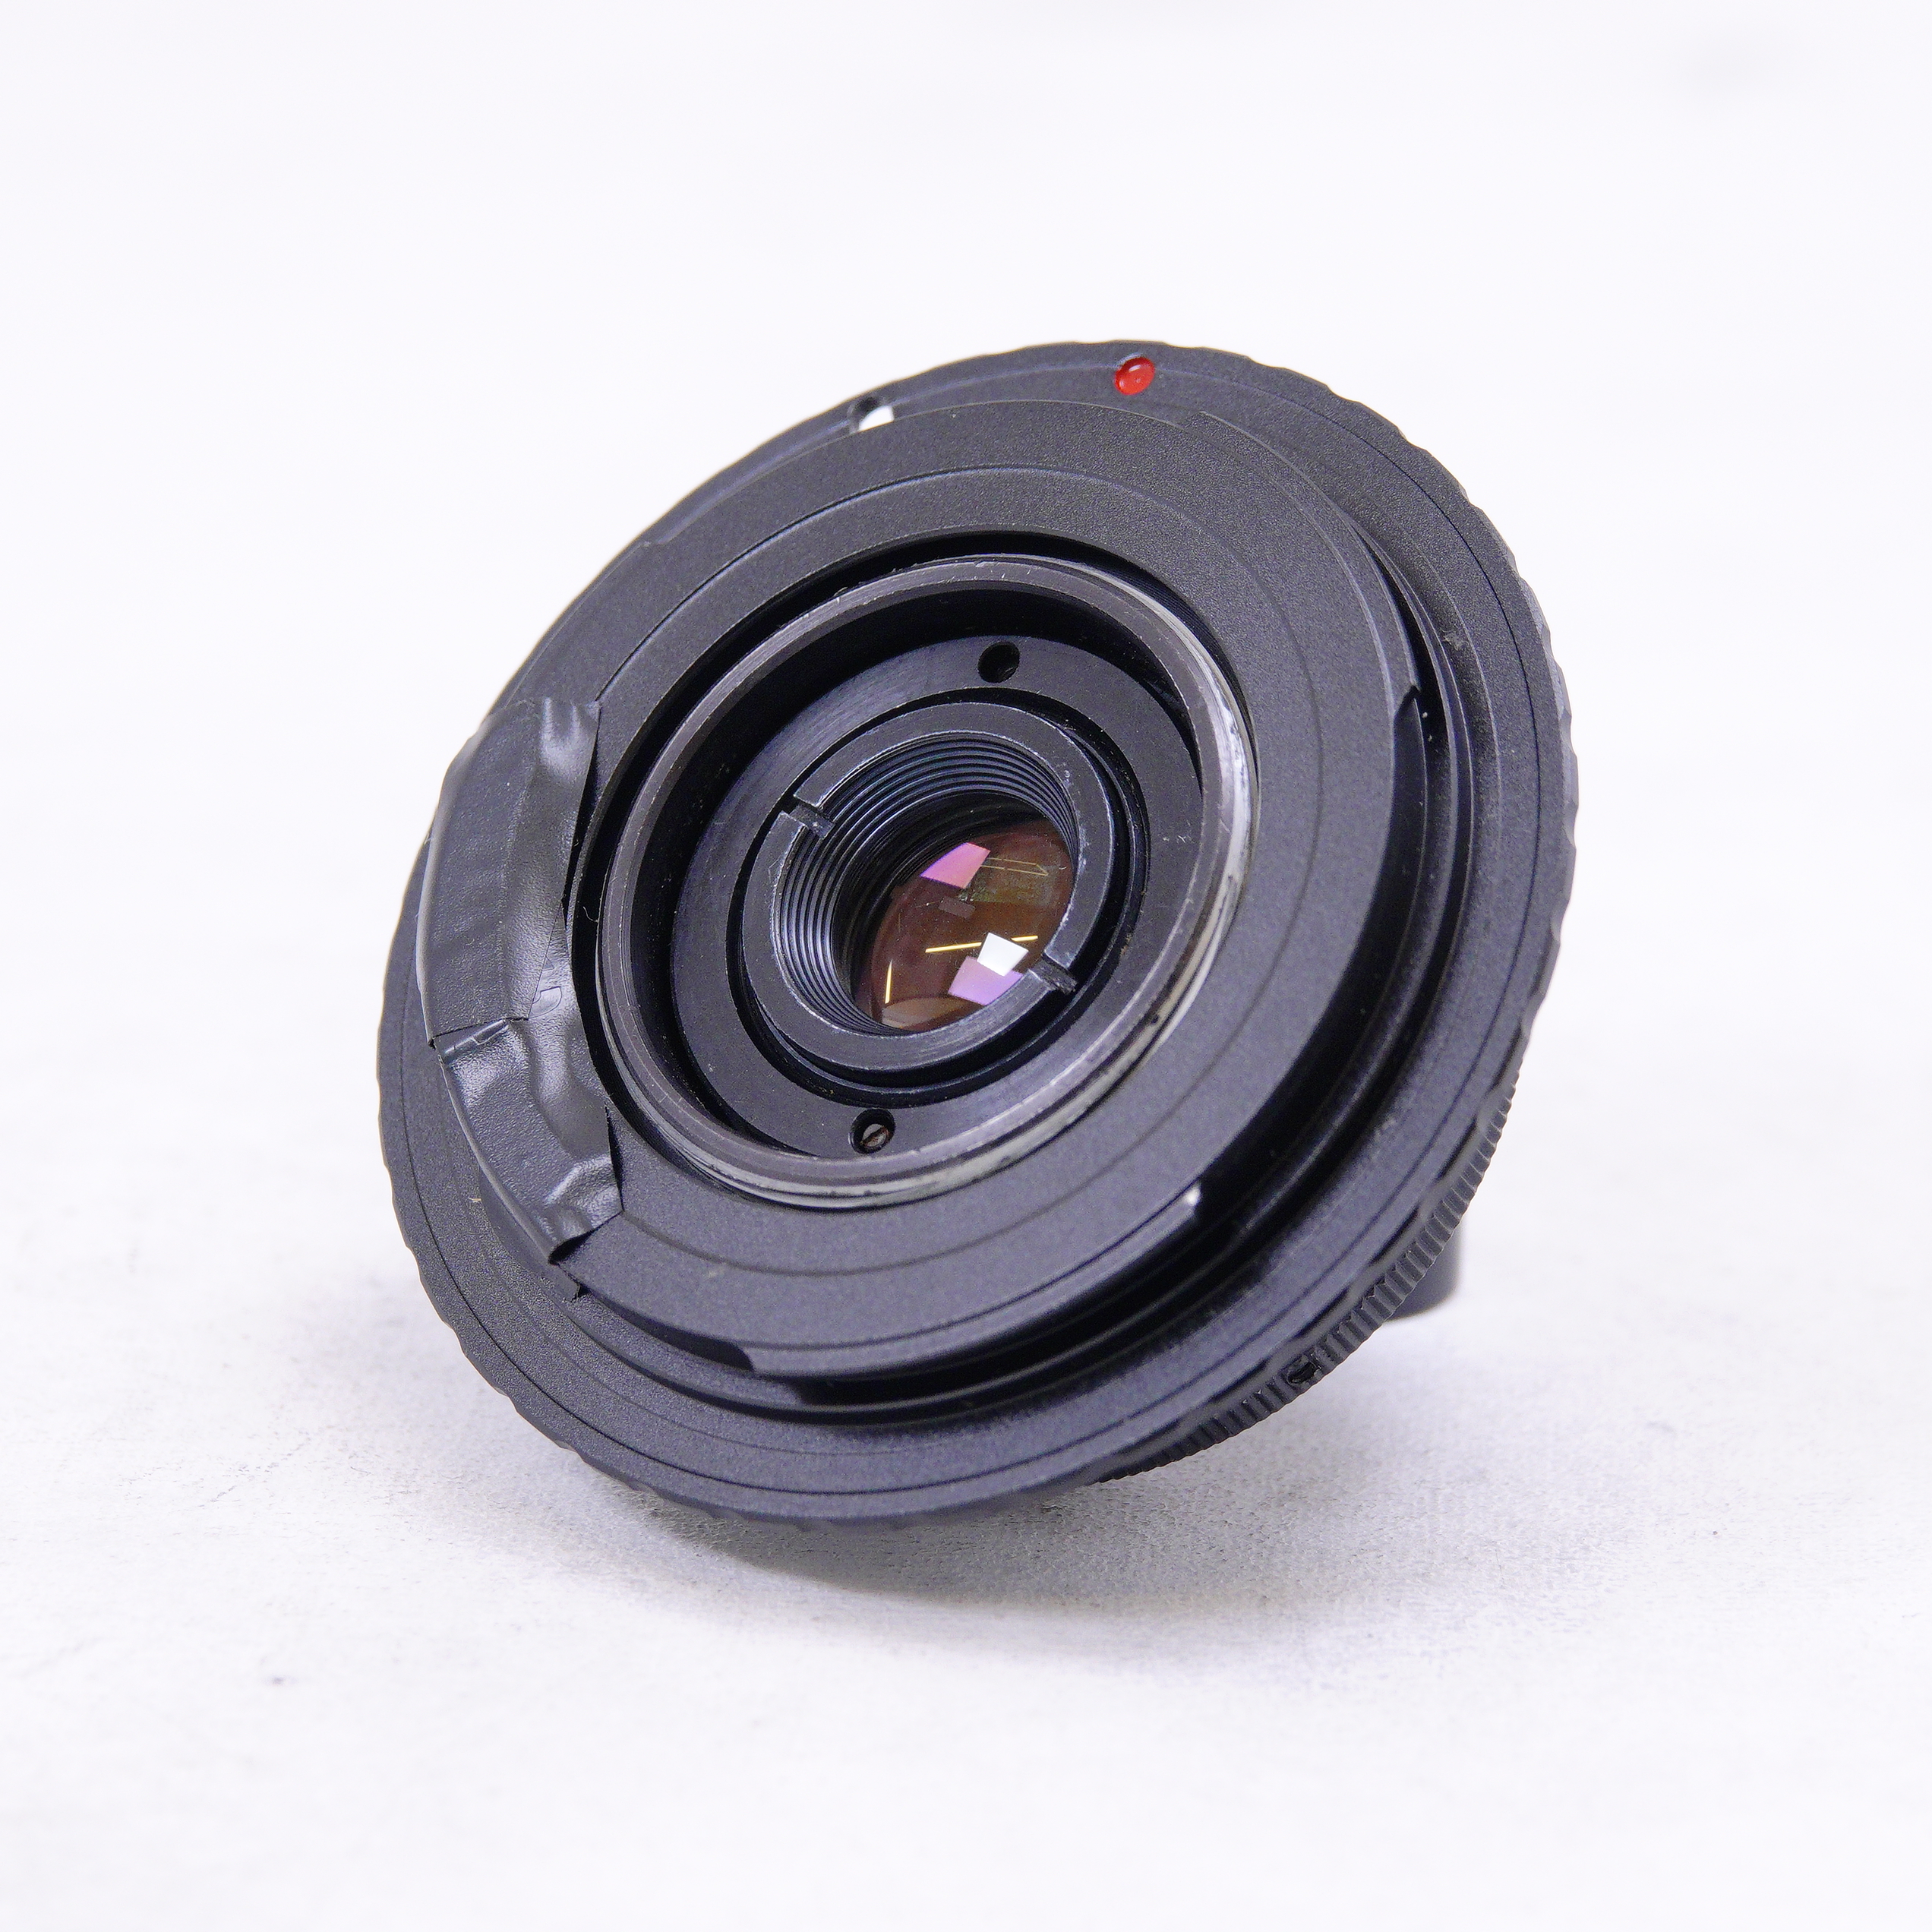 Lente Industar 50-2 f3.5 con adaptador M42 a Canon EF - Usad